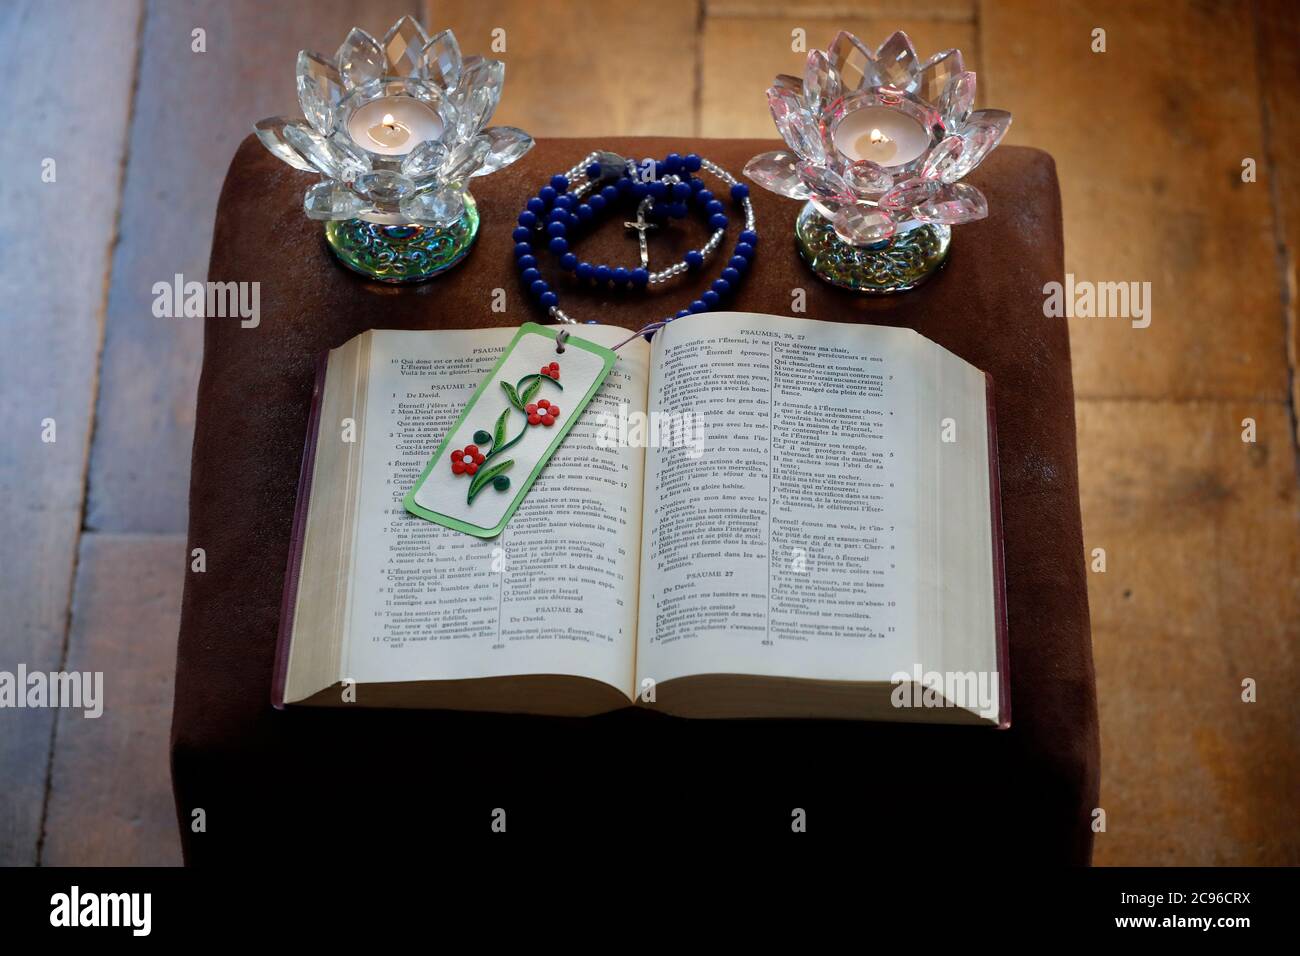 Coronavirus-Epidemie (COVID-19). Altar zu Hause mit bibel zum Beten. Frankreich. Stockfoto